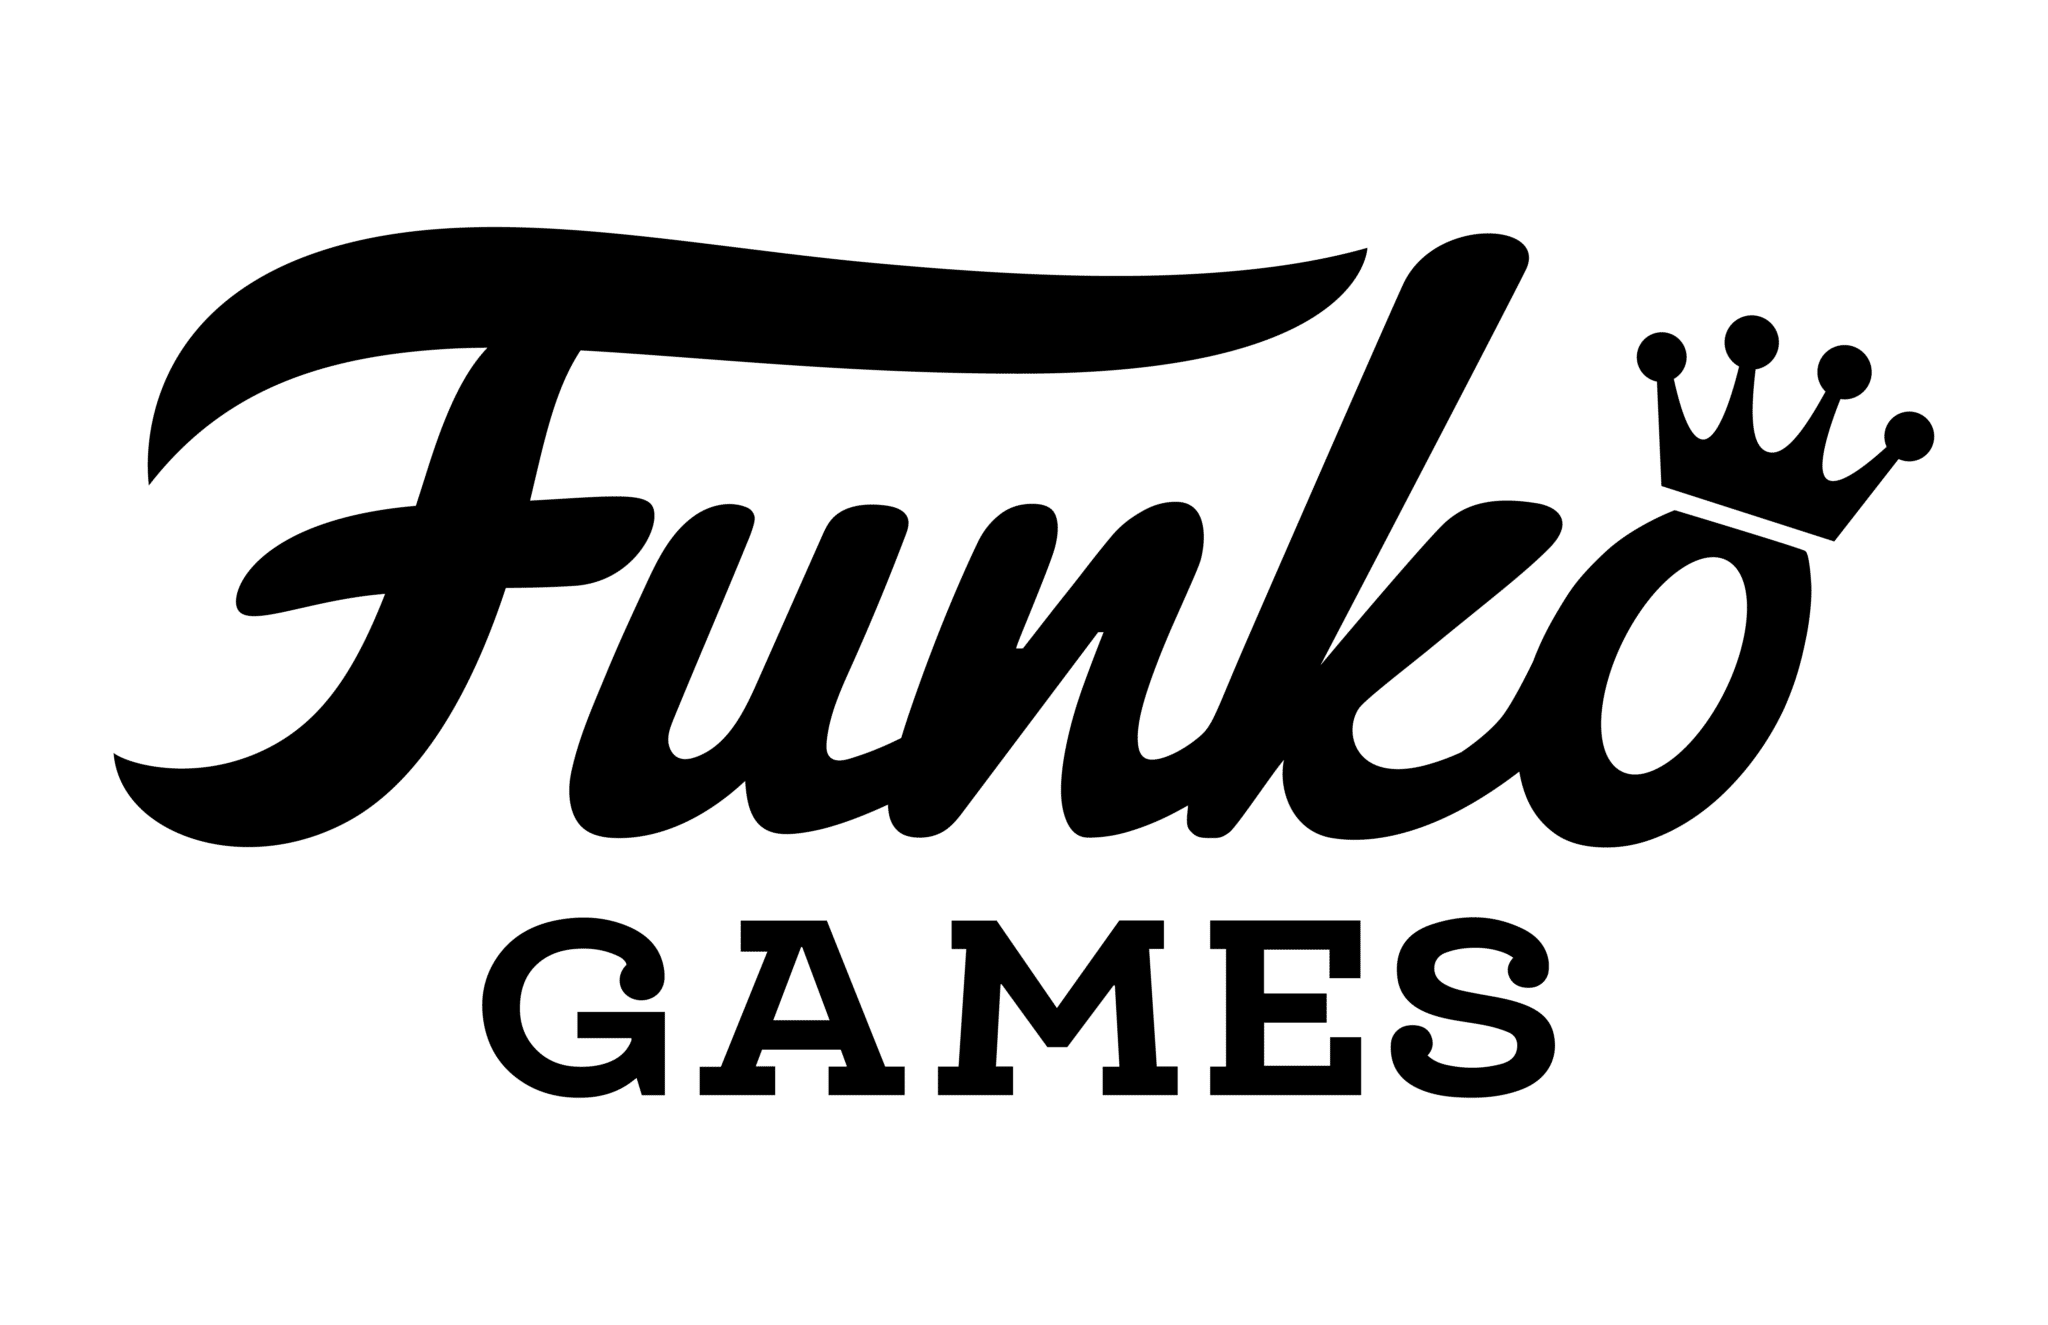 Funko Games